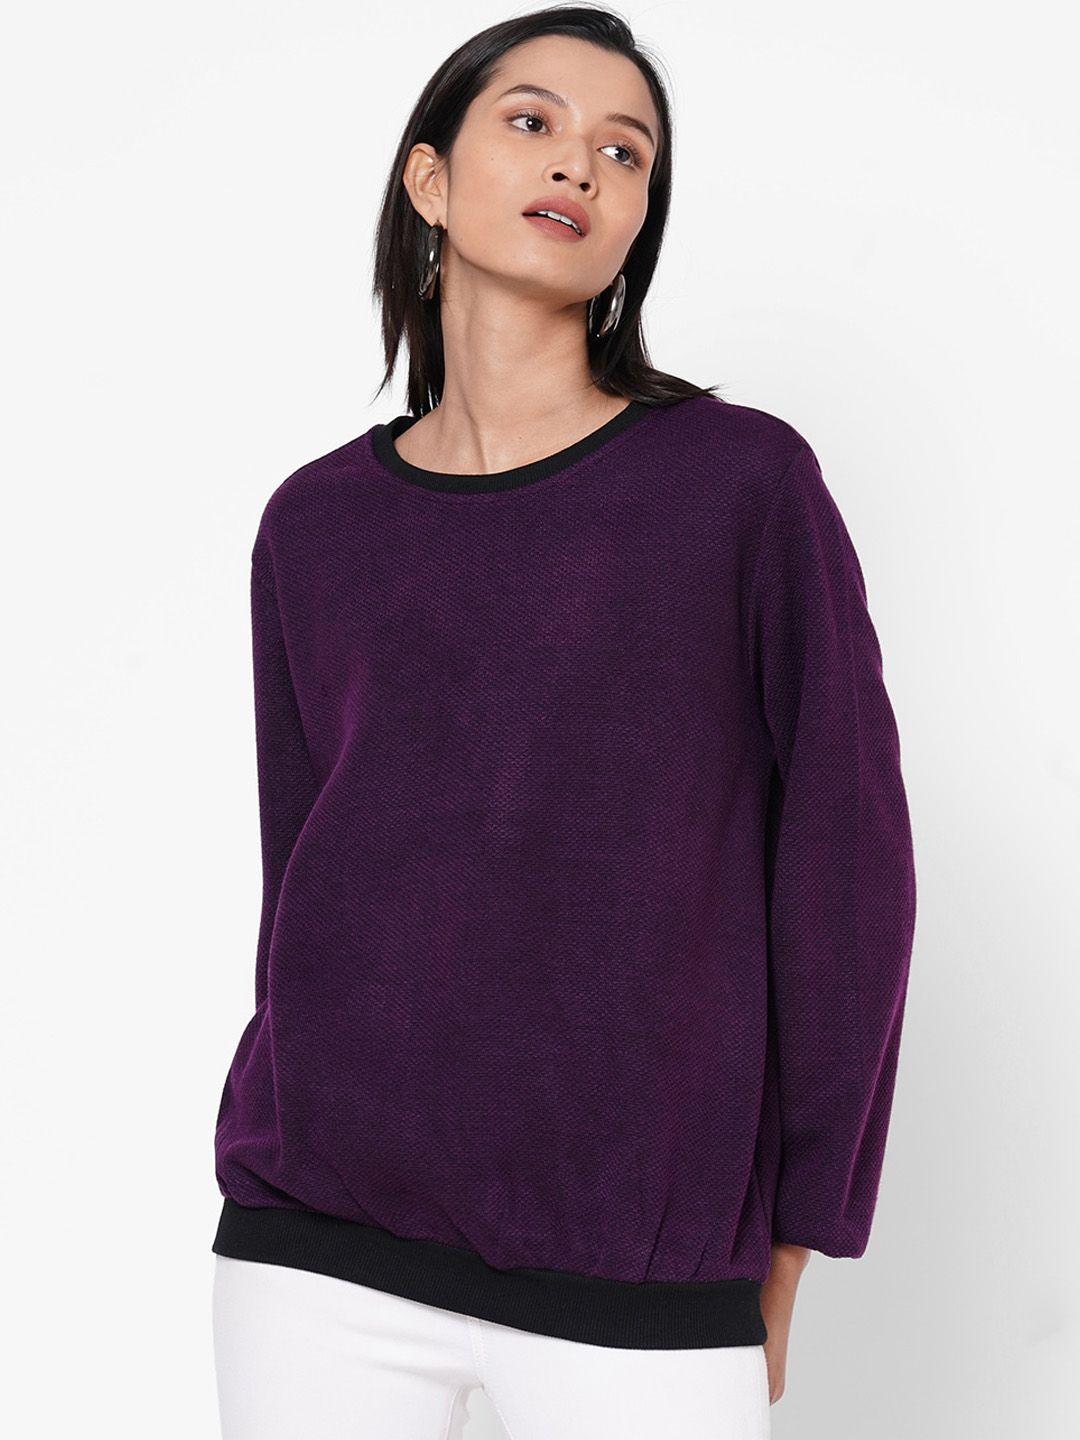 109f-women-purple-solid-top